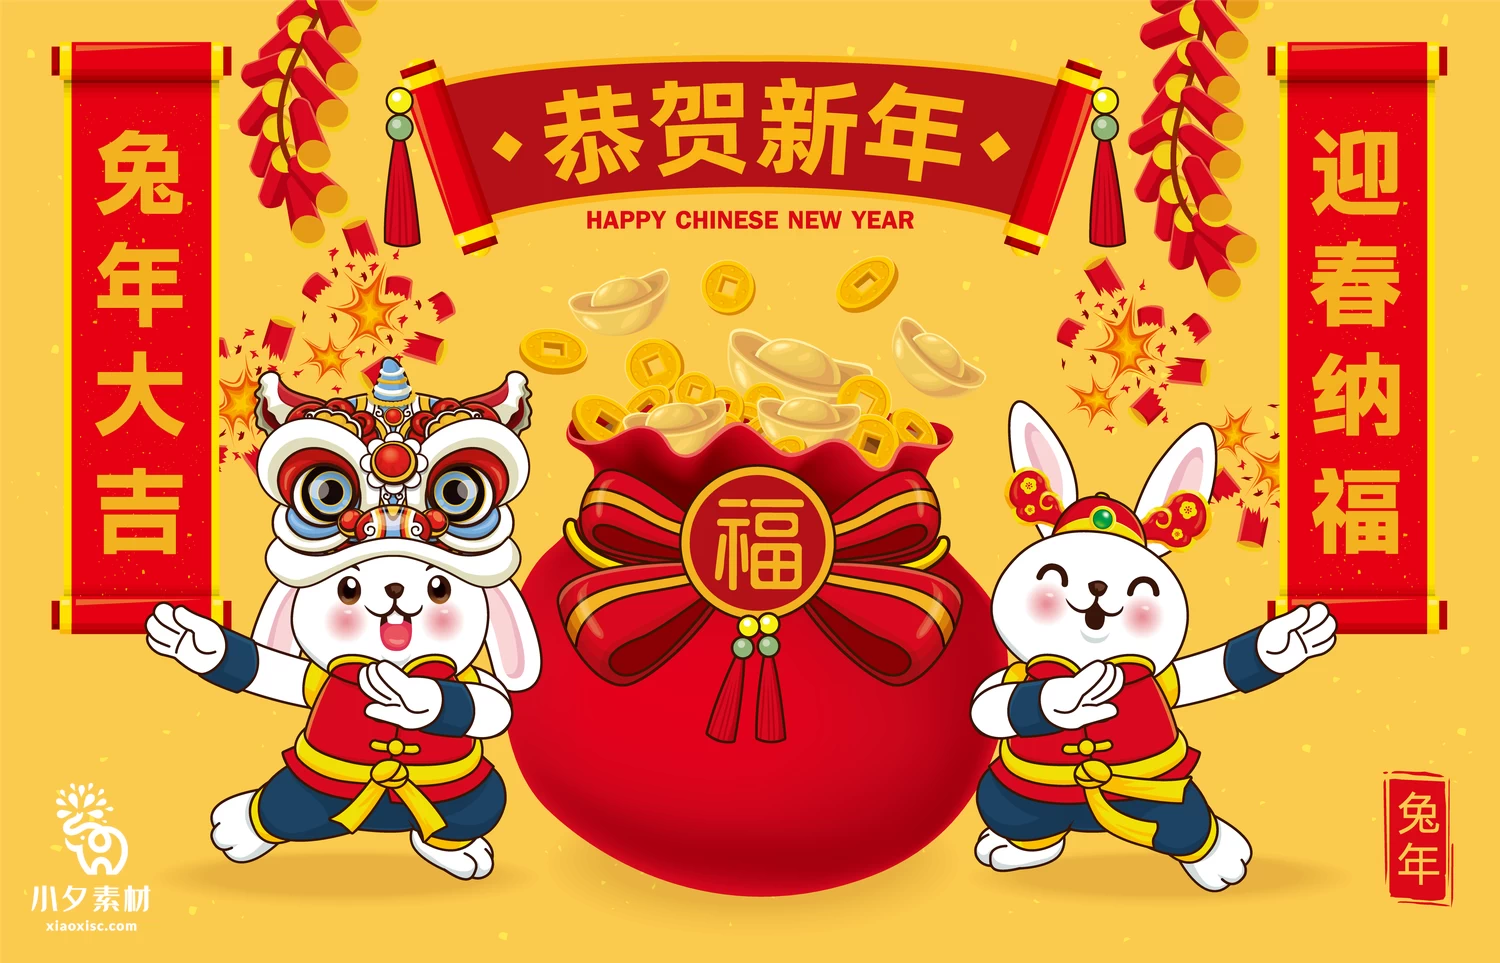 2023年兔年恭贺新春新年快乐喜庆节日宣传海报图片AI矢量设计素材【017】